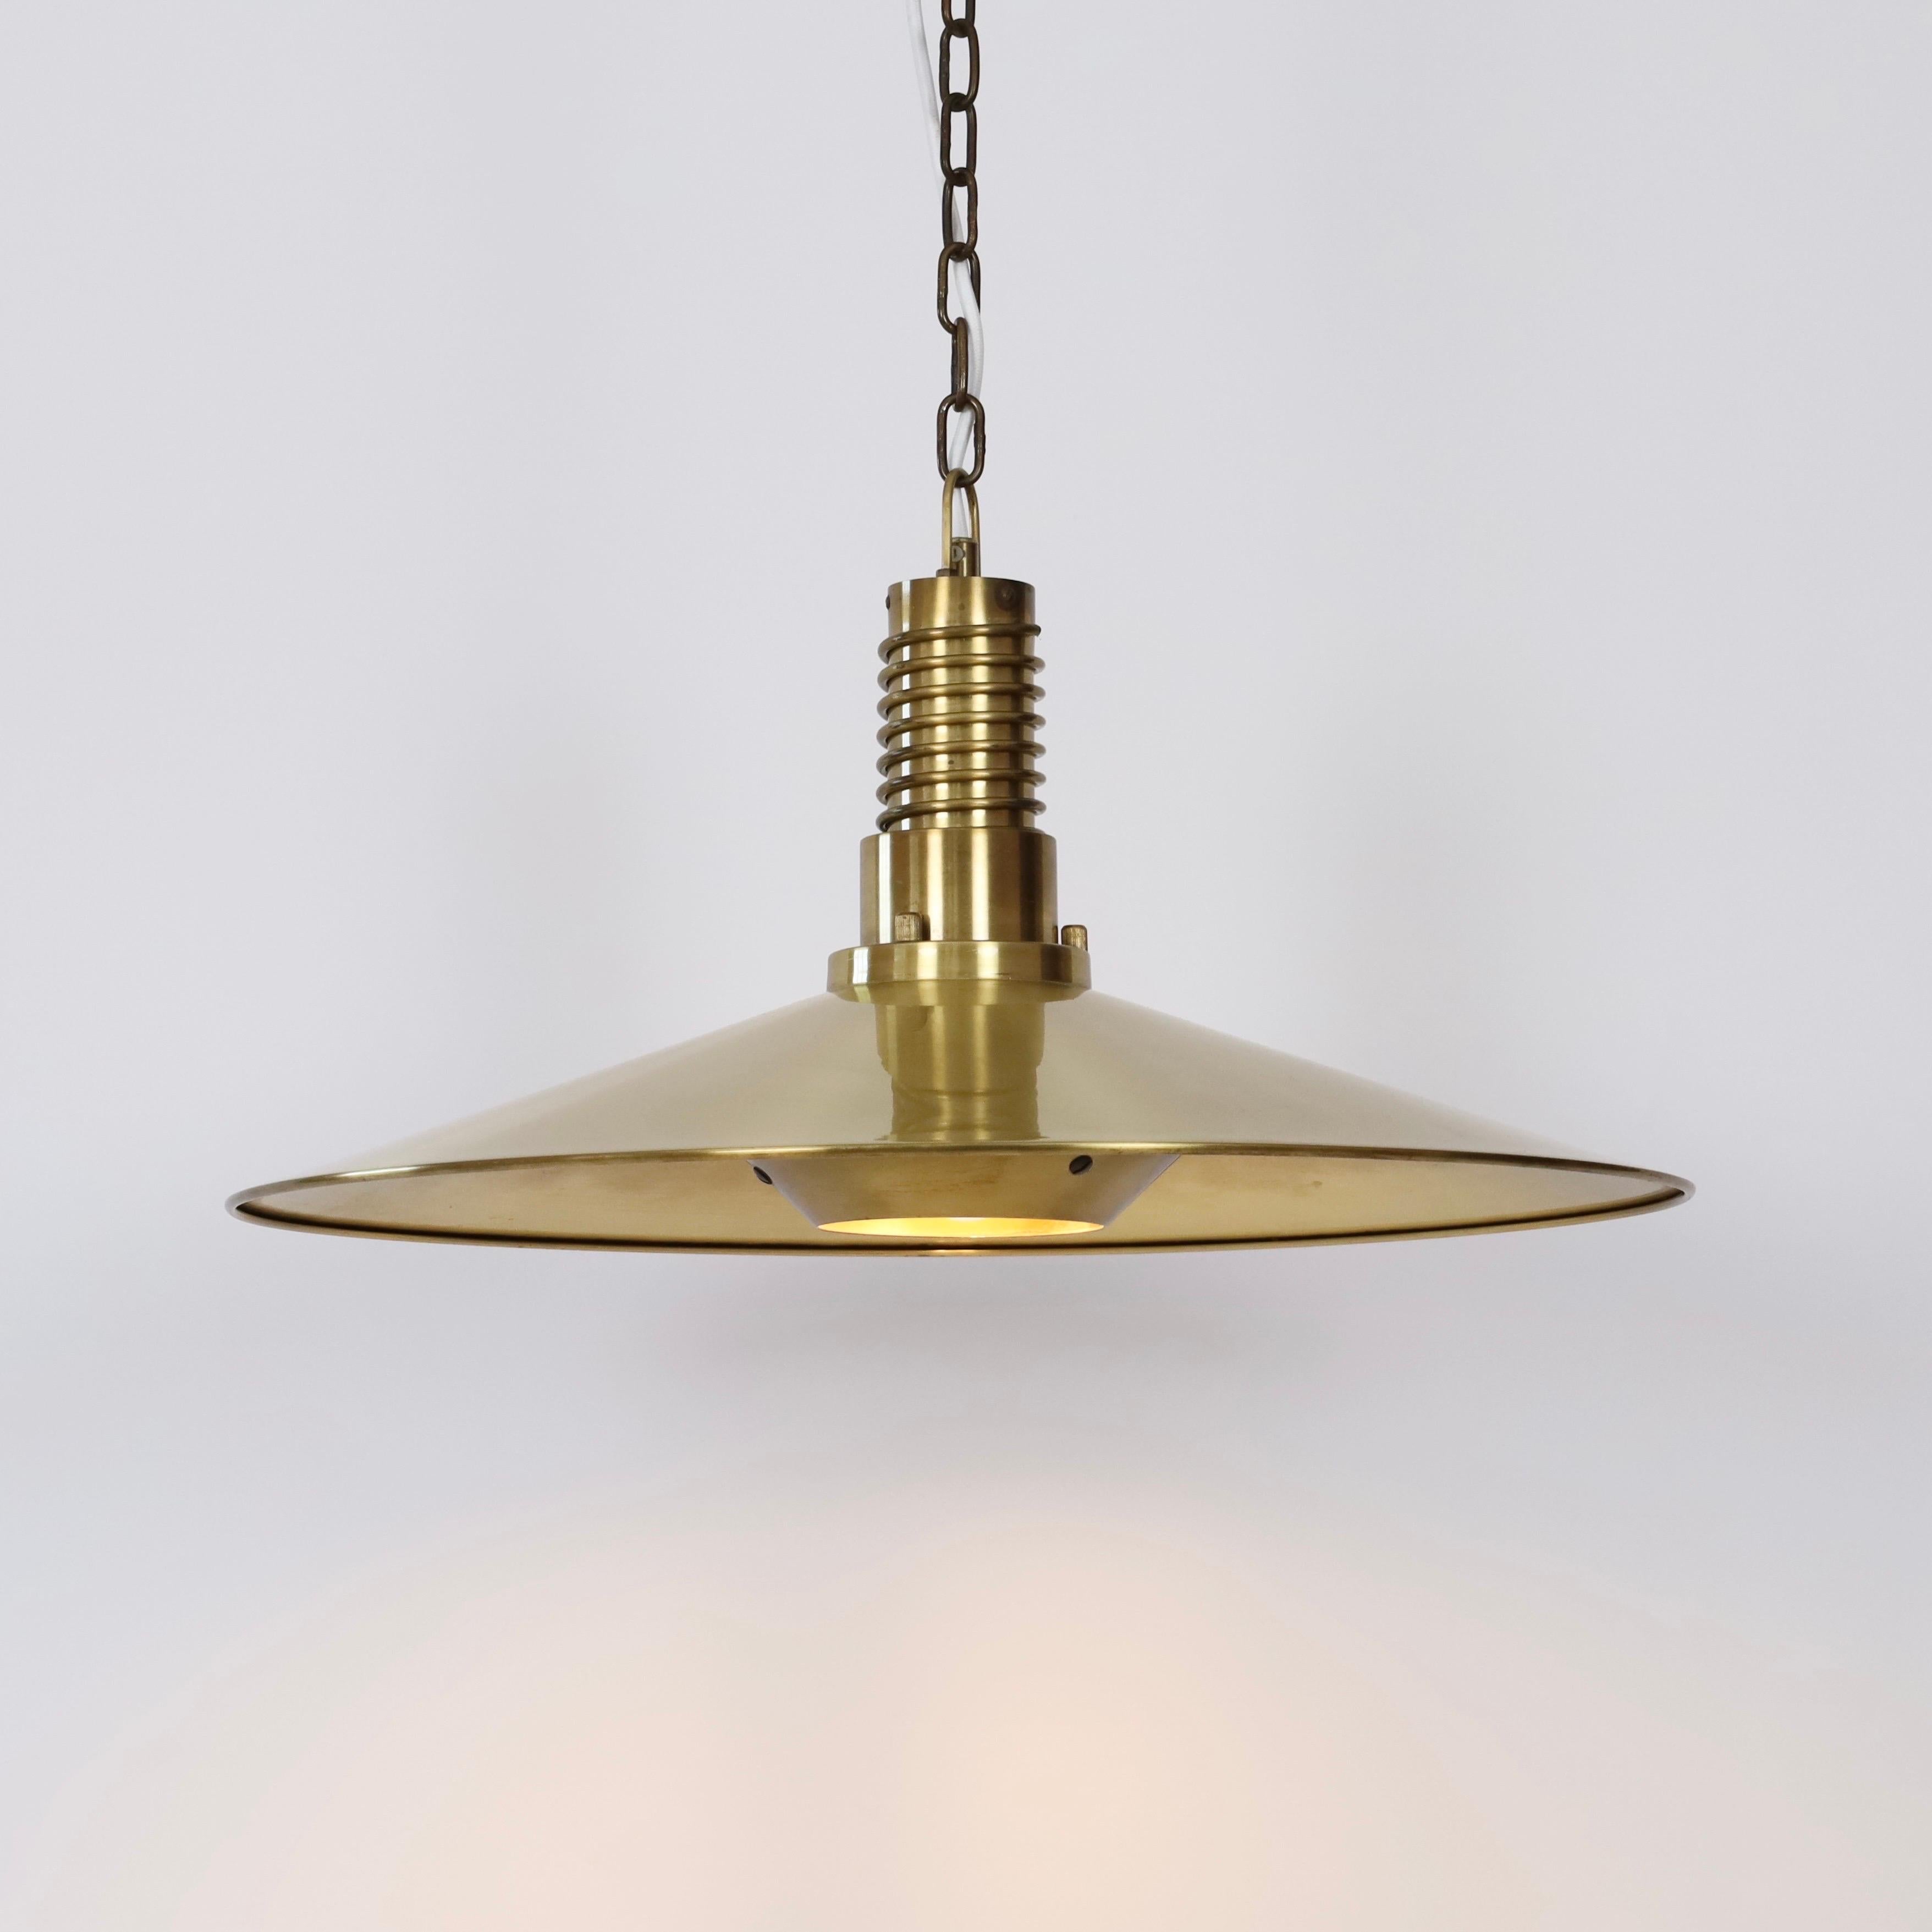 Metal Substantial Danish Modern Brass Pendant Light by Fog & Morup, 1960s, Denmark For Sale